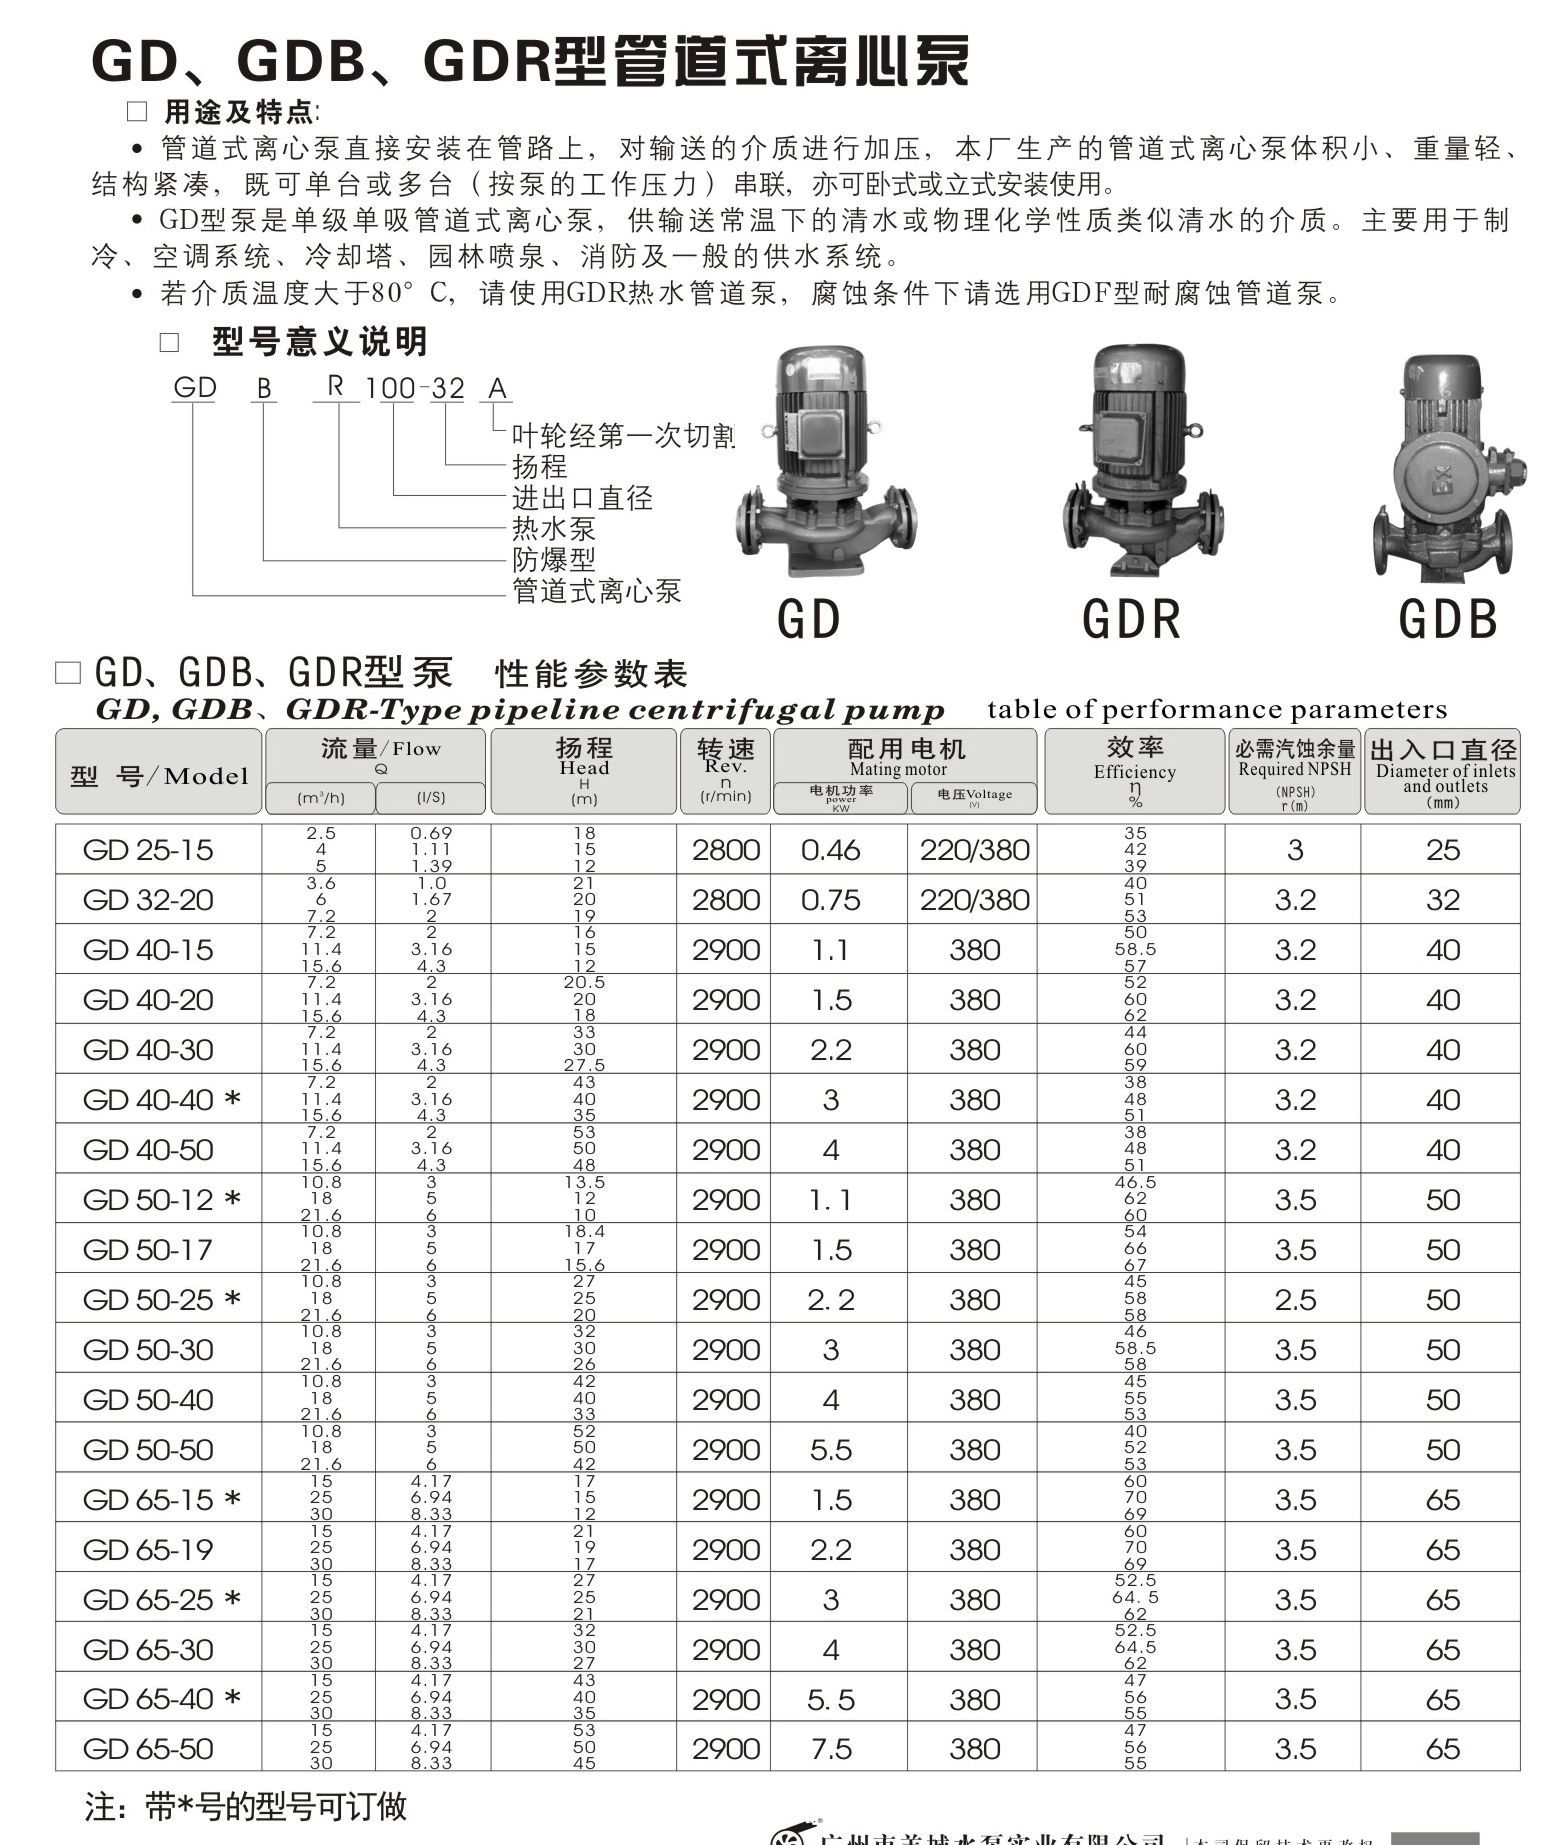 羊城水泵|GD管道泵|广州羊城水泵厂|羊城泵业|广州不锈钢水泵